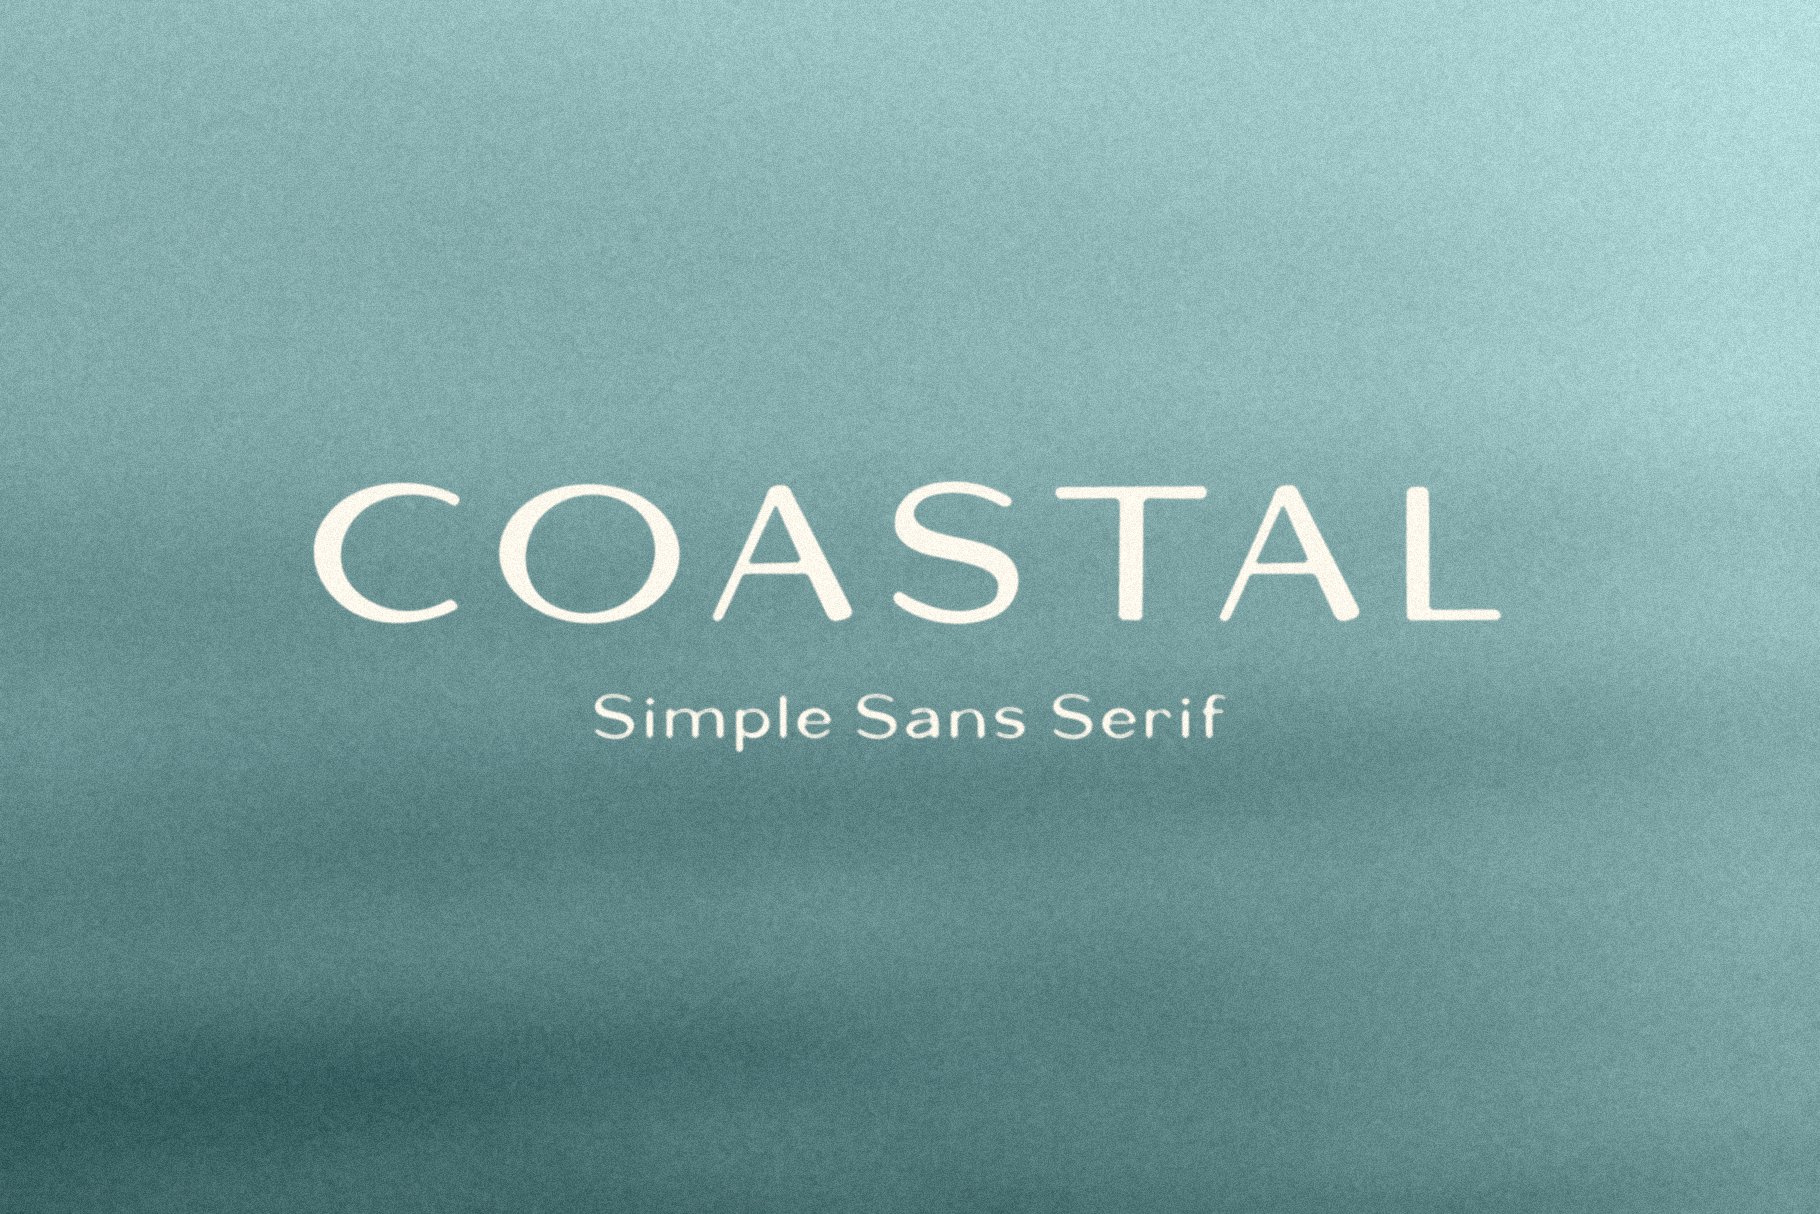 Coastal cover image.